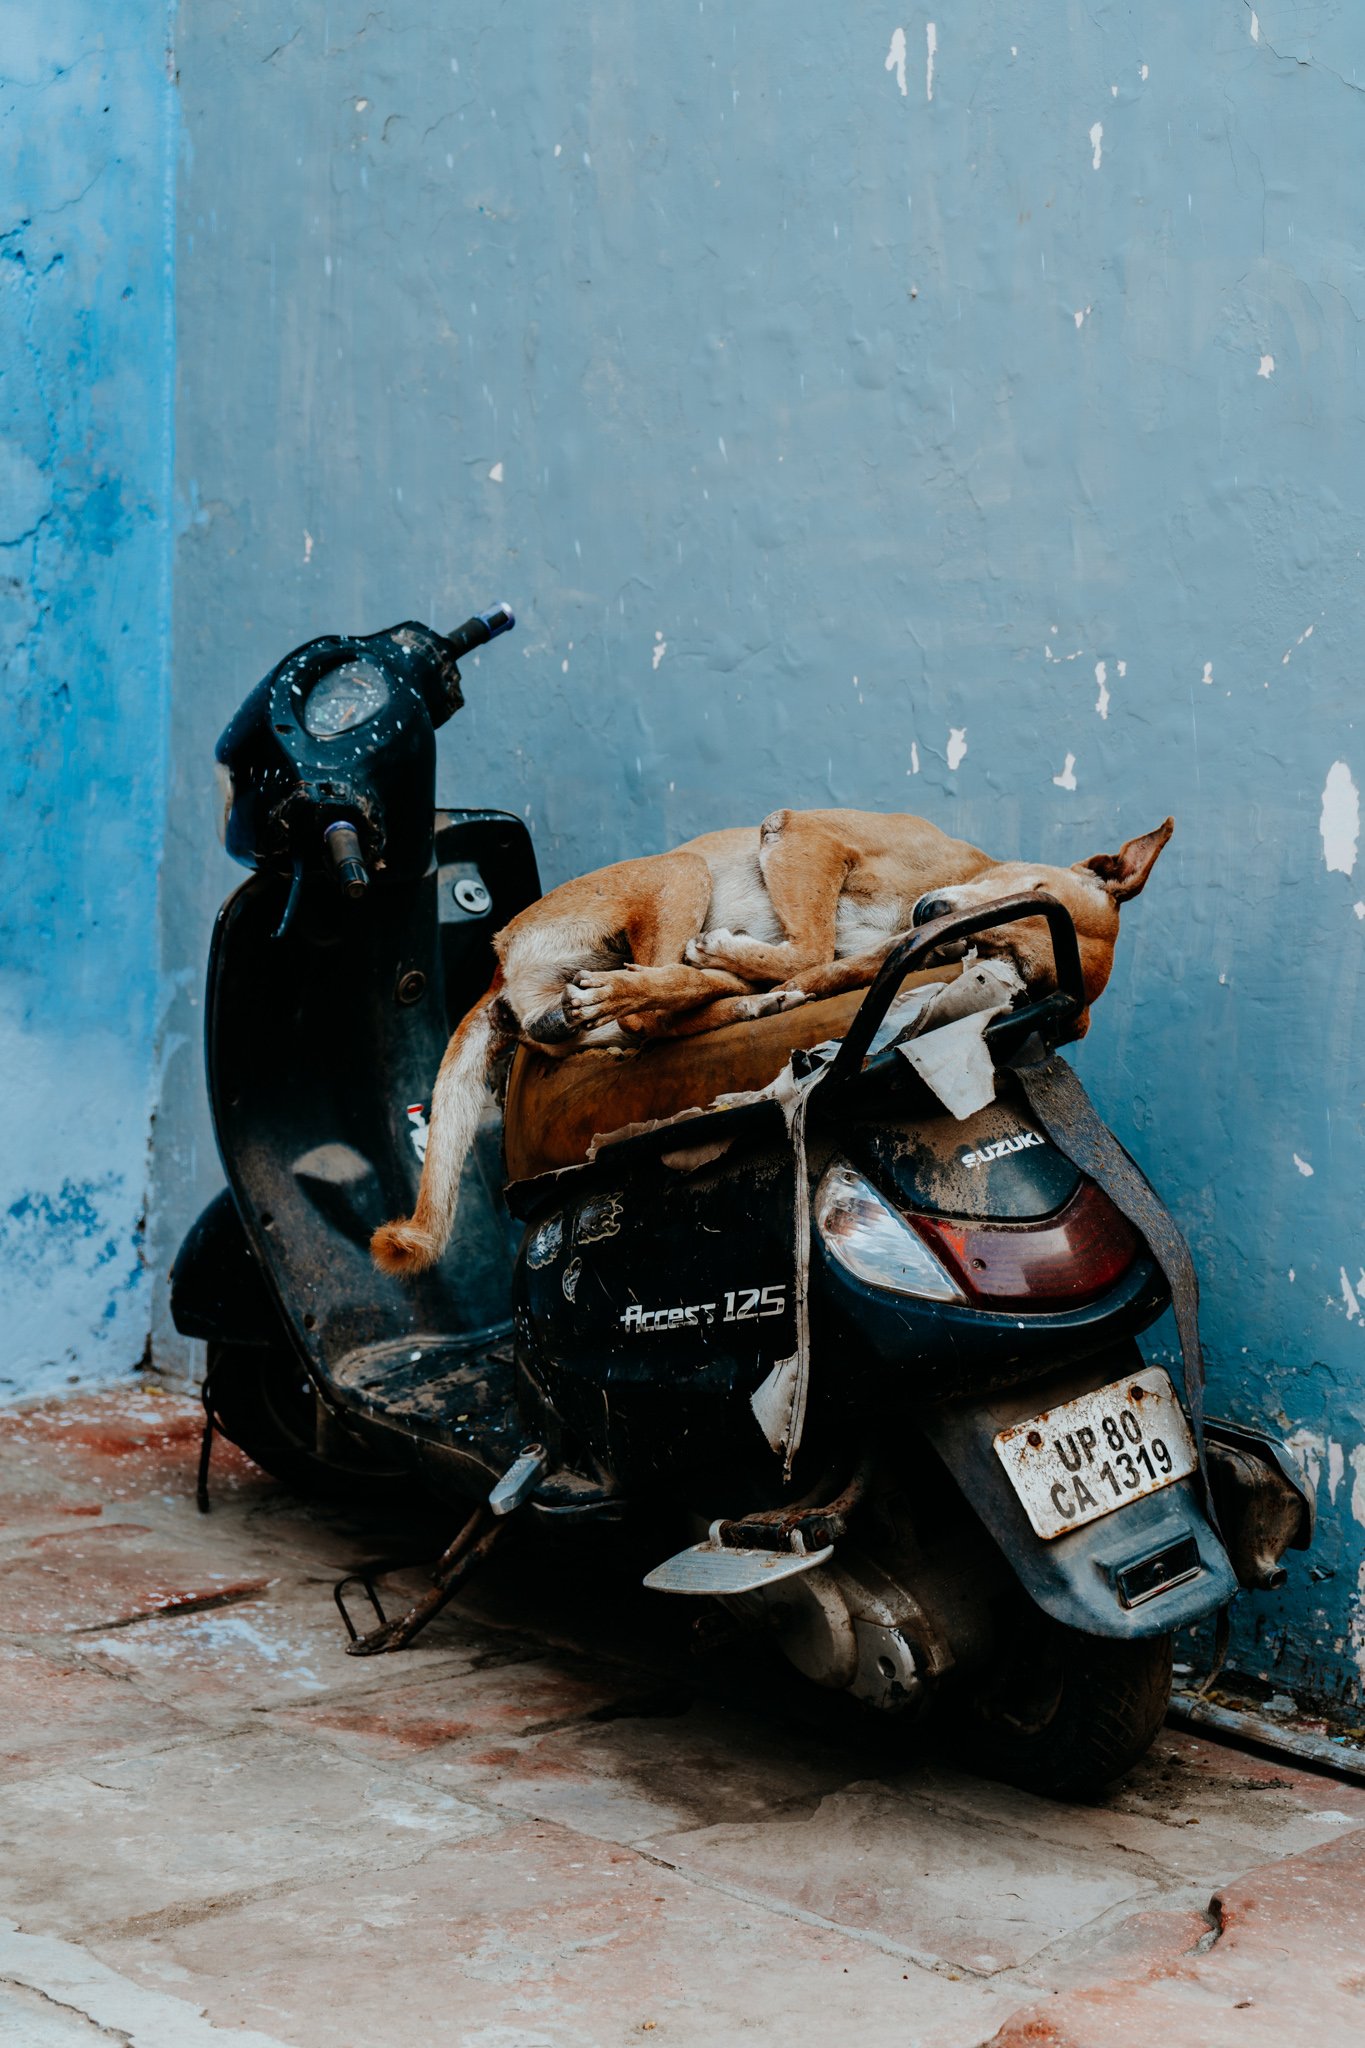 motorbike in Agra